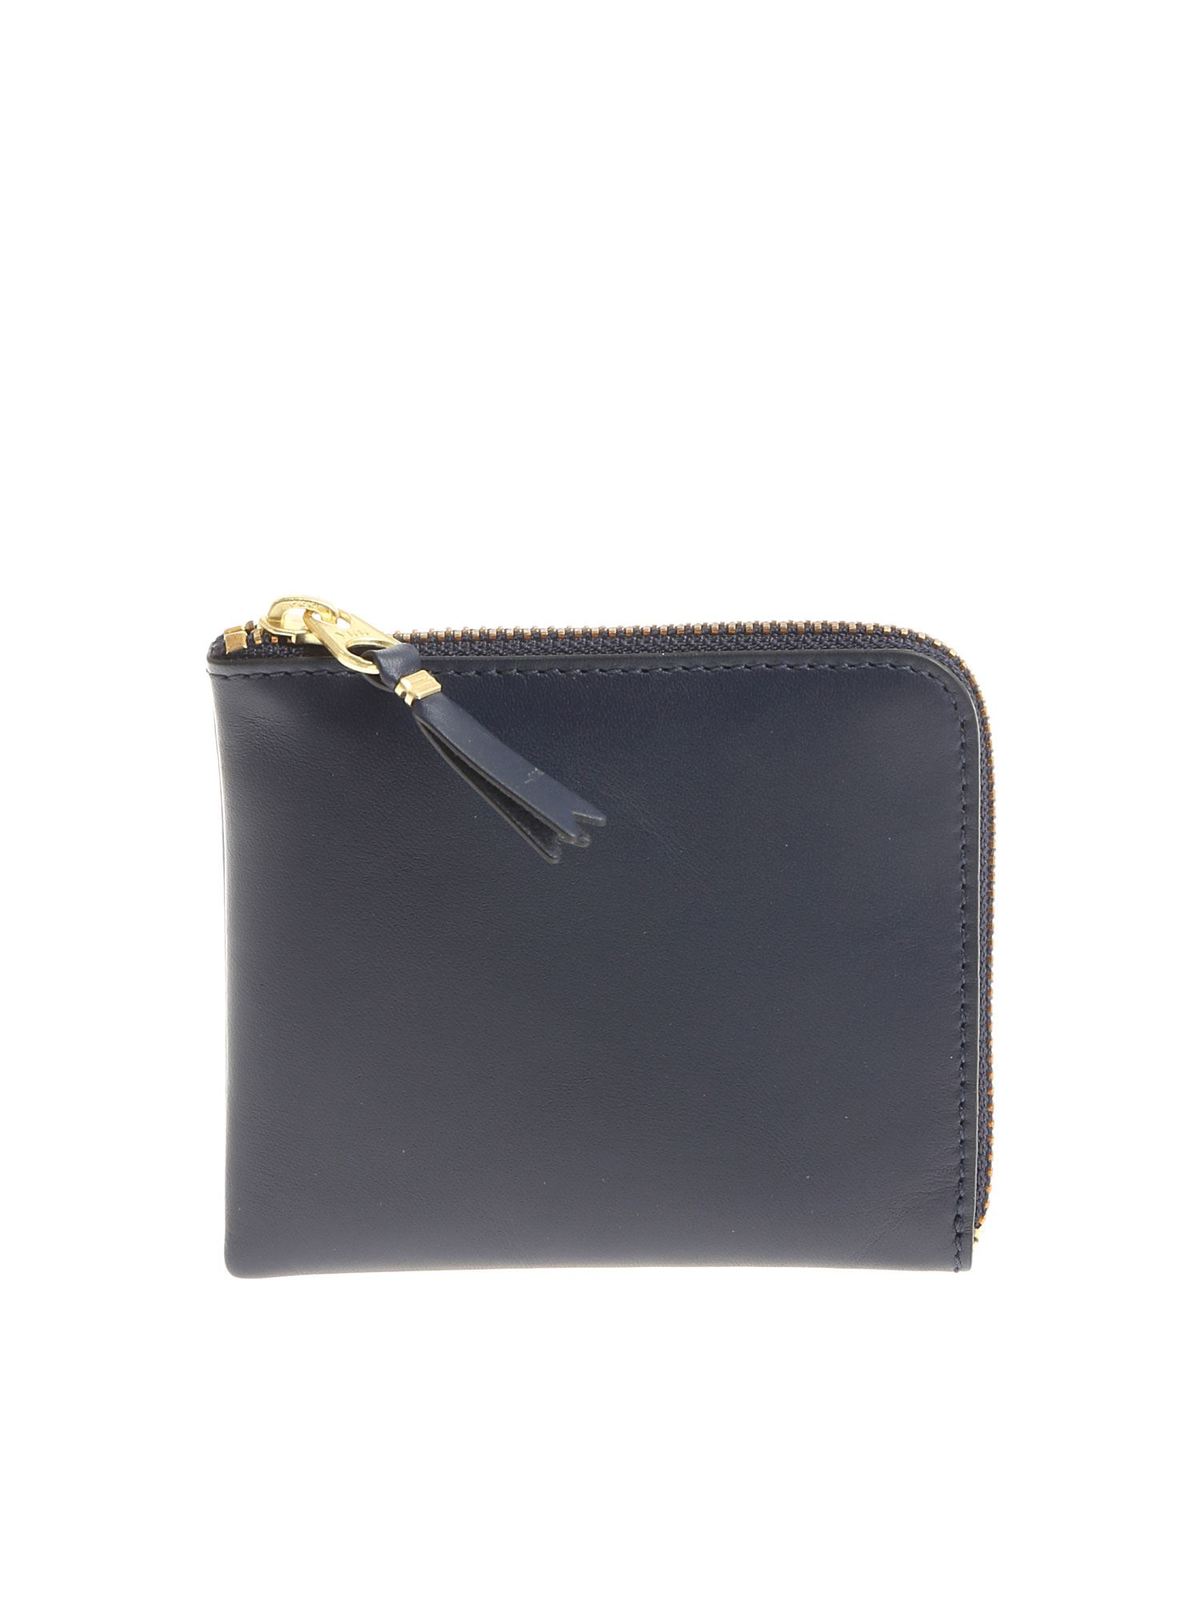 Comme Des Garçons Blue Leather Wallet With Zip